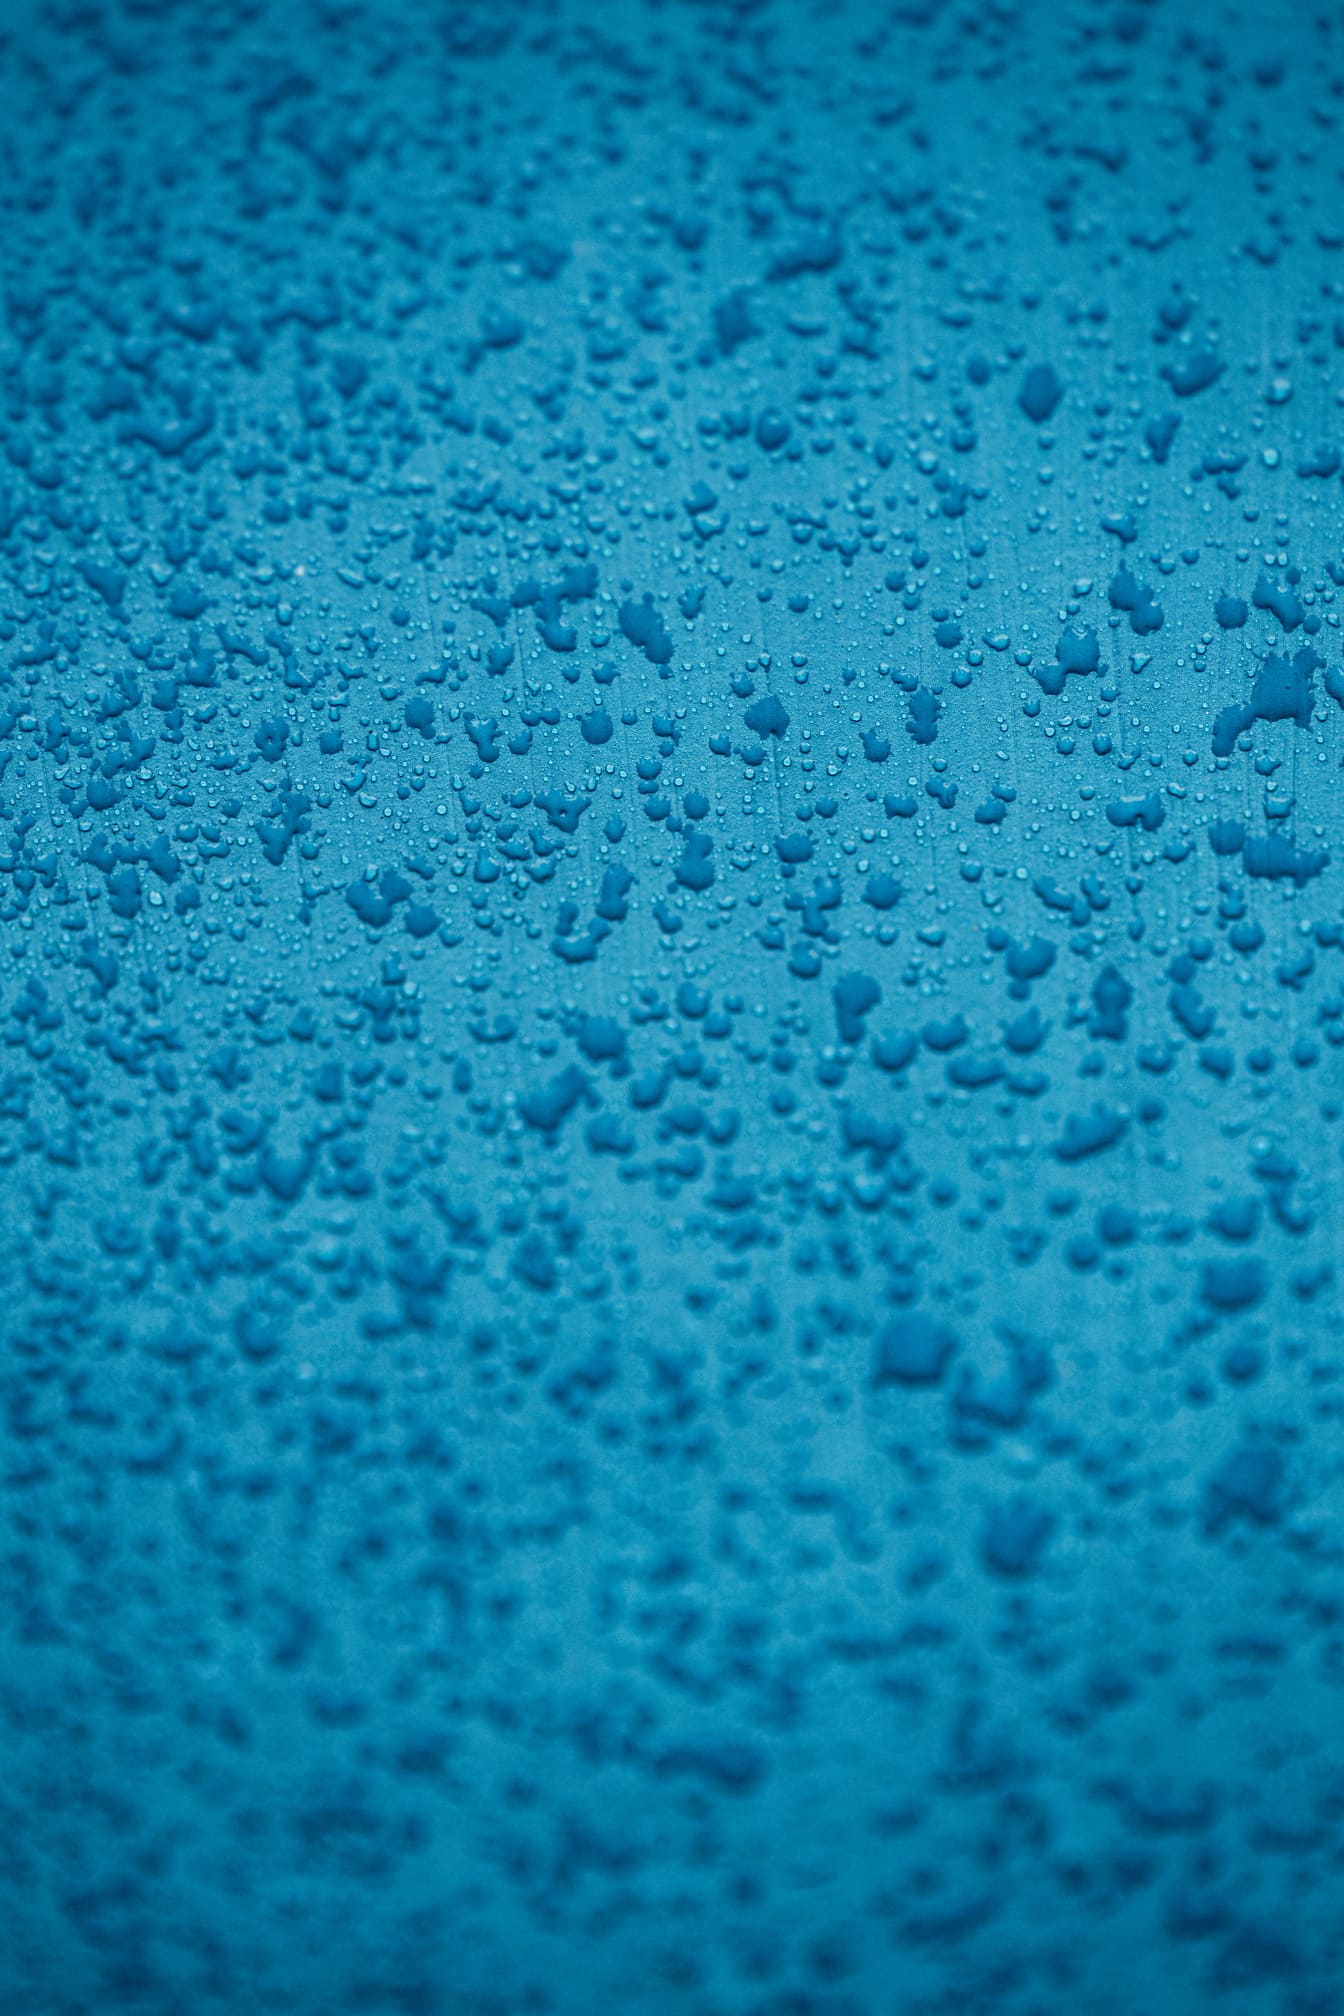 Condensación de humedad en la textura de primer plano de la pintura azul celeste